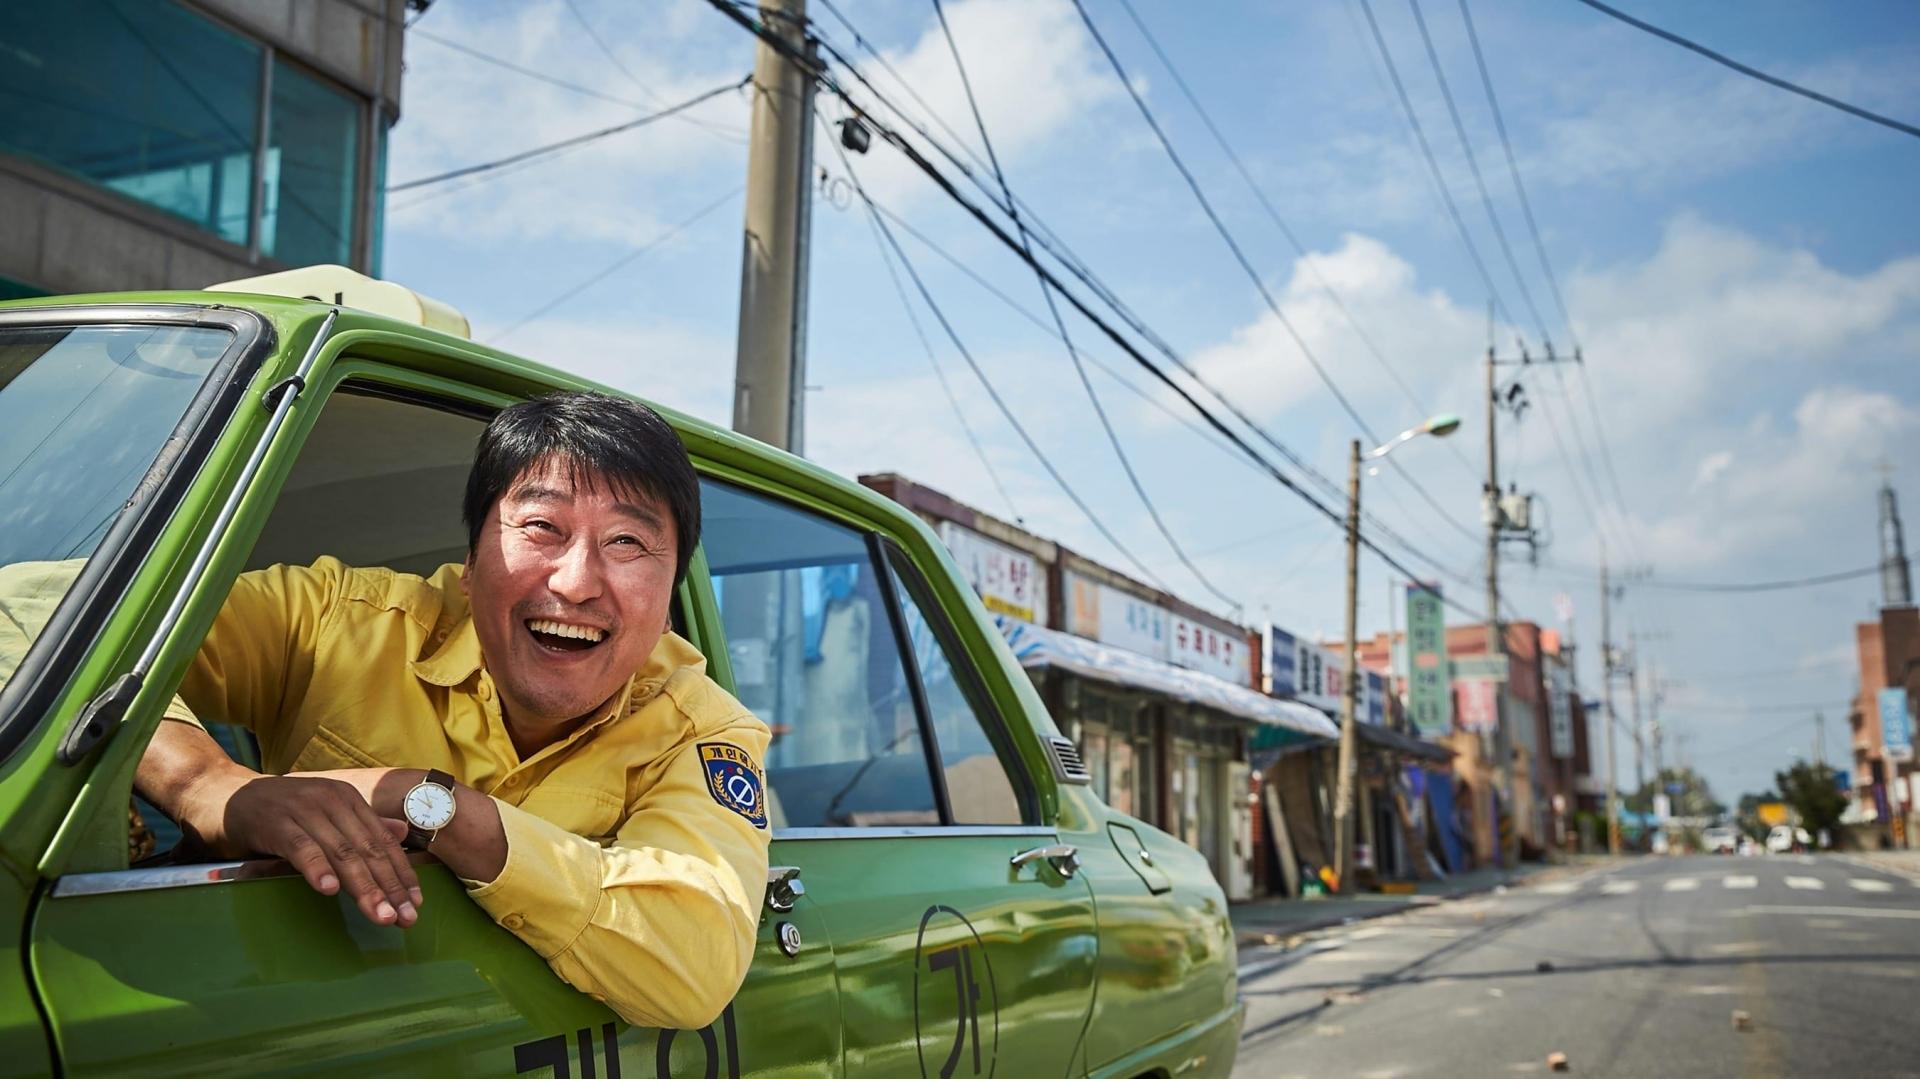 دانلود فیلم کره ای A Taxi Driver 2017